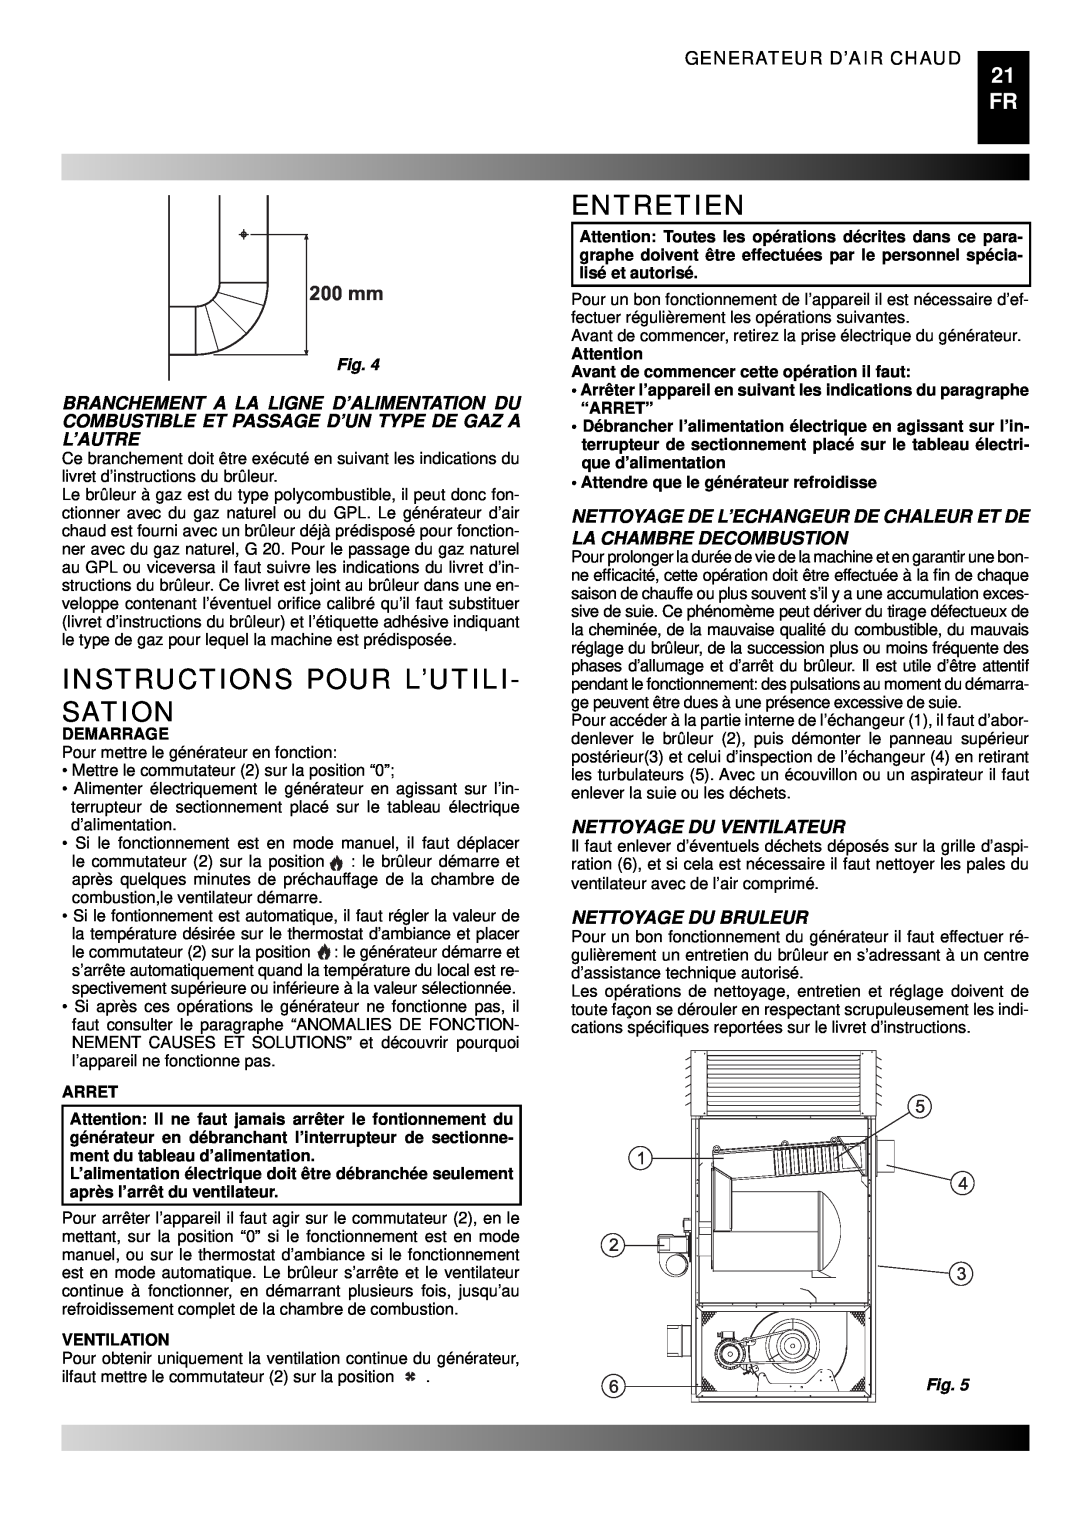 Master Lock BG 100 Instructions Pour L’Utili- Sation, Entretien, Nettoyage Du Ventilateur, Nettoyage Du Bruleur, 200 mm 